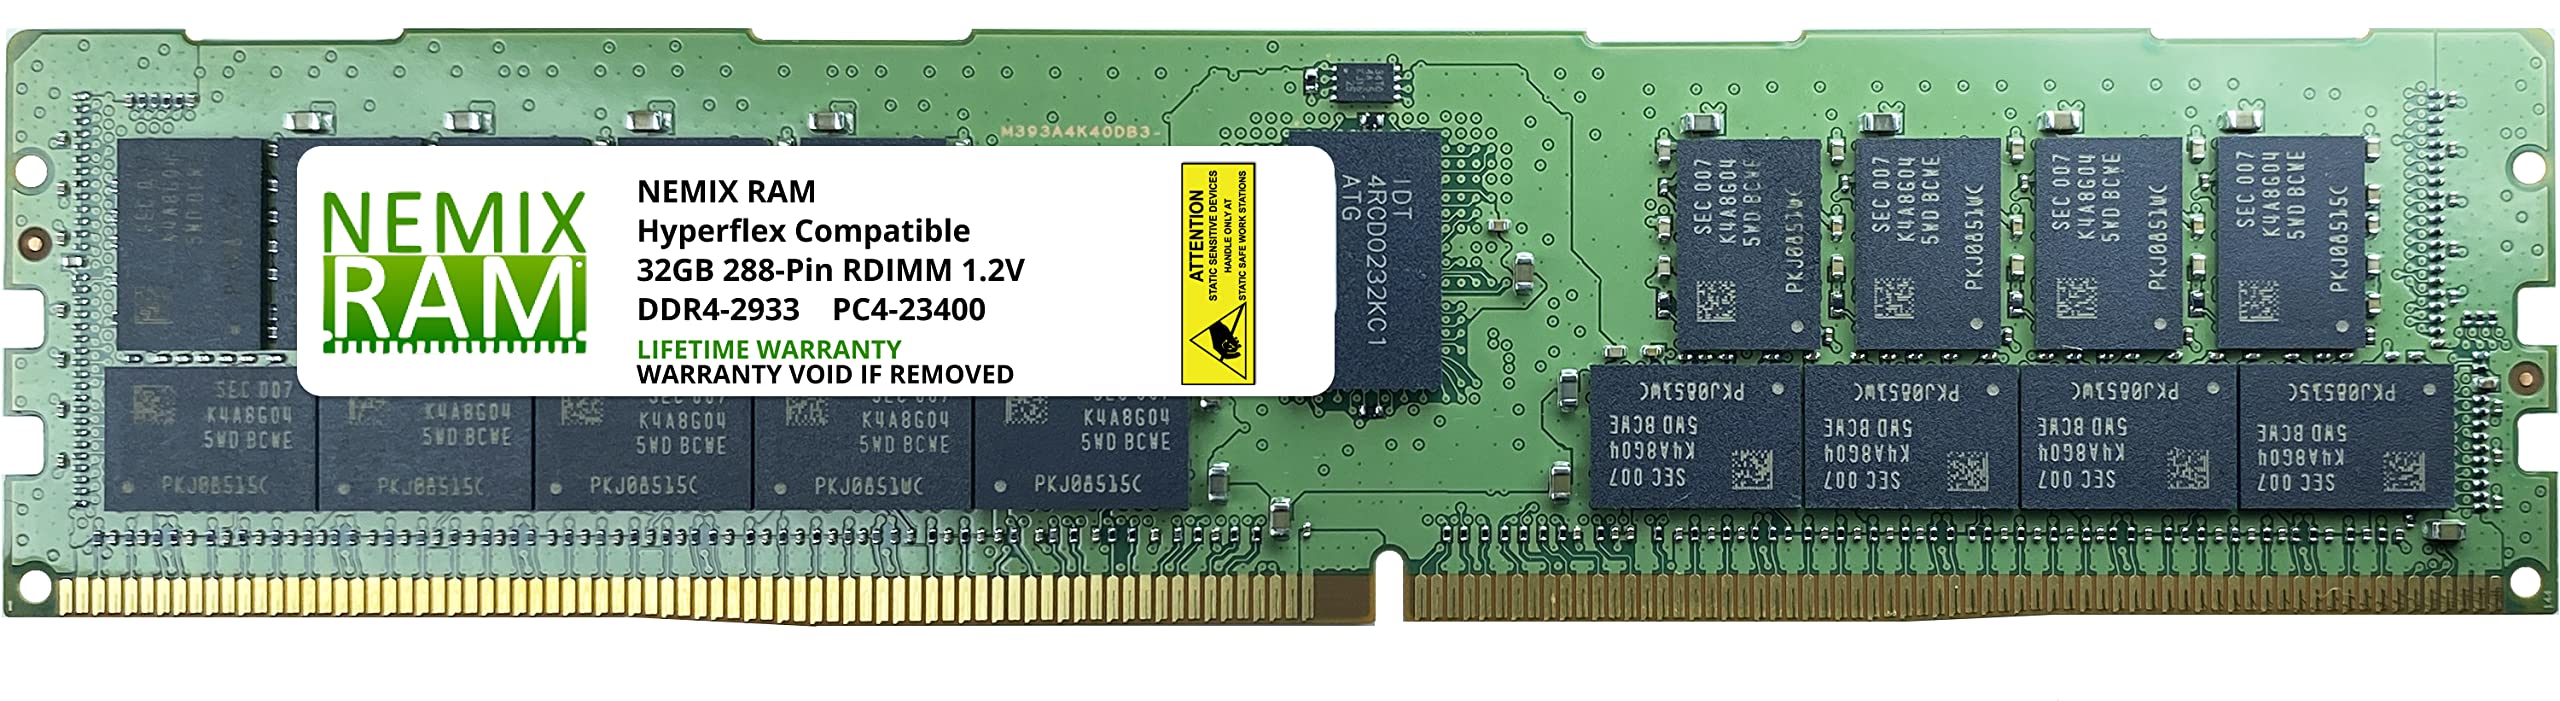 Nemix Ram HX-MR-X32G2RT-H 32GB Hyperflex HX240c M5用